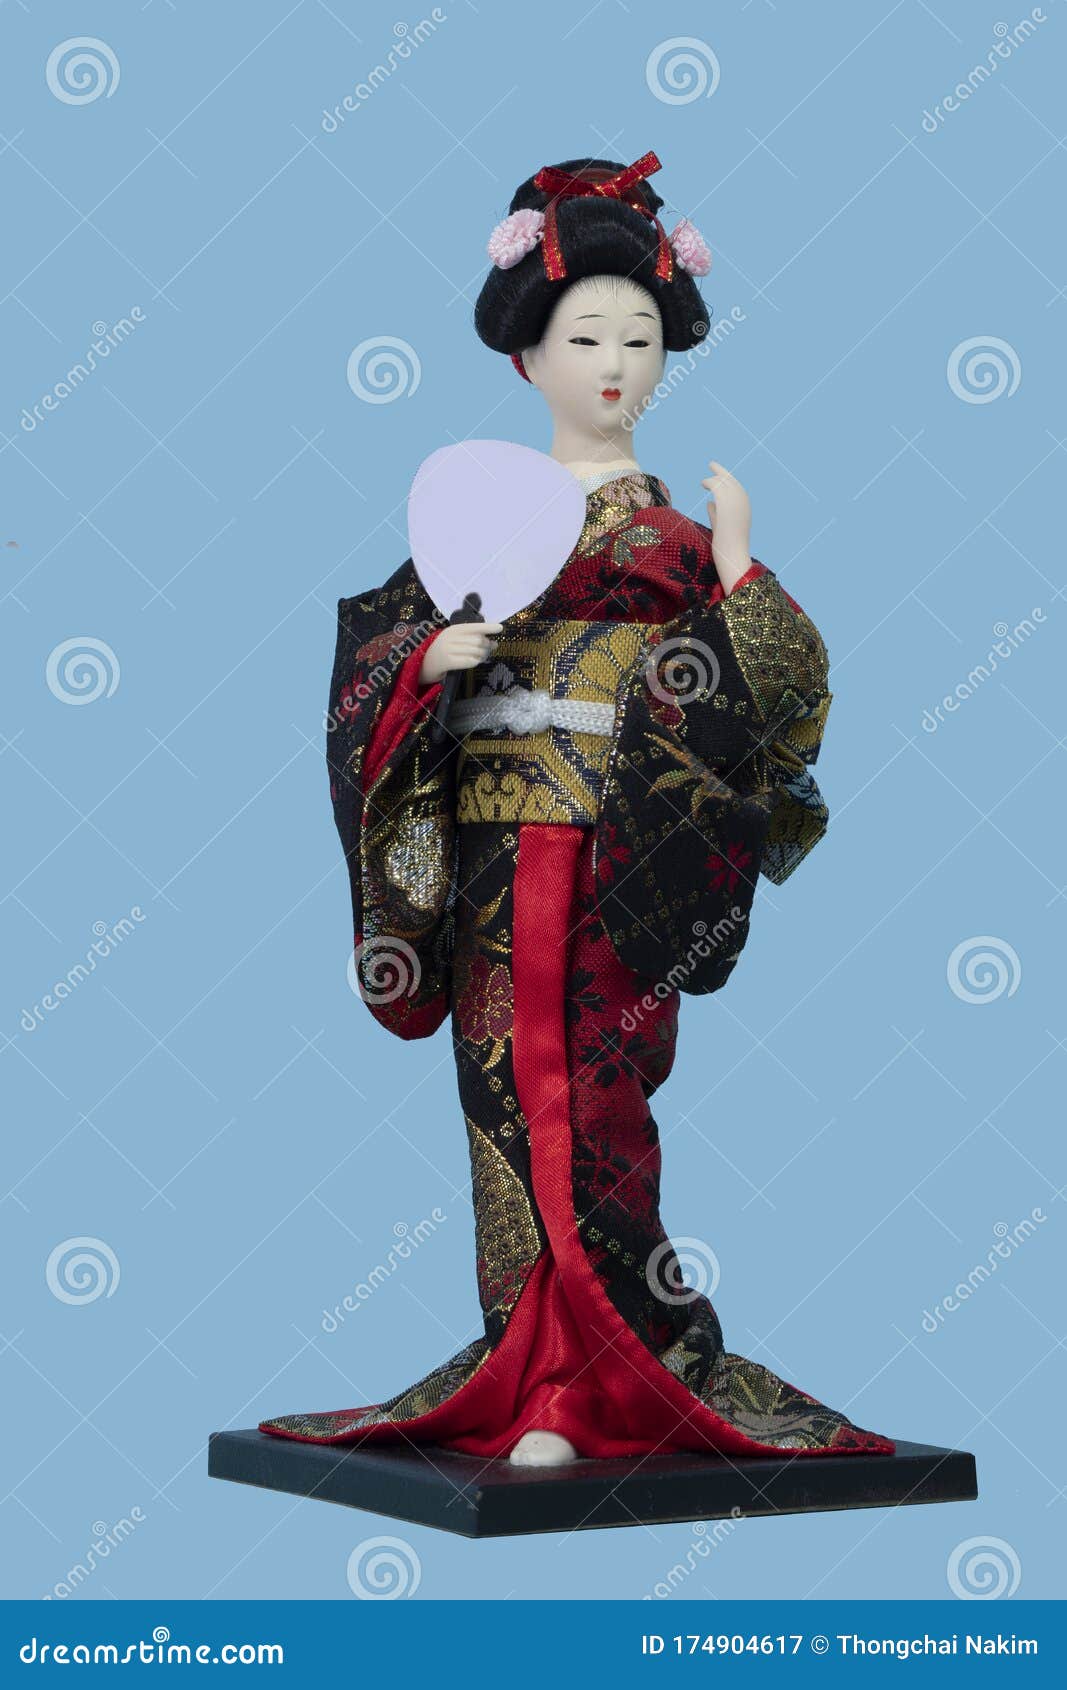 Japanese Brocade Kimono Kabuki Doll Geisha Figure Figurine Statue Decor #2 